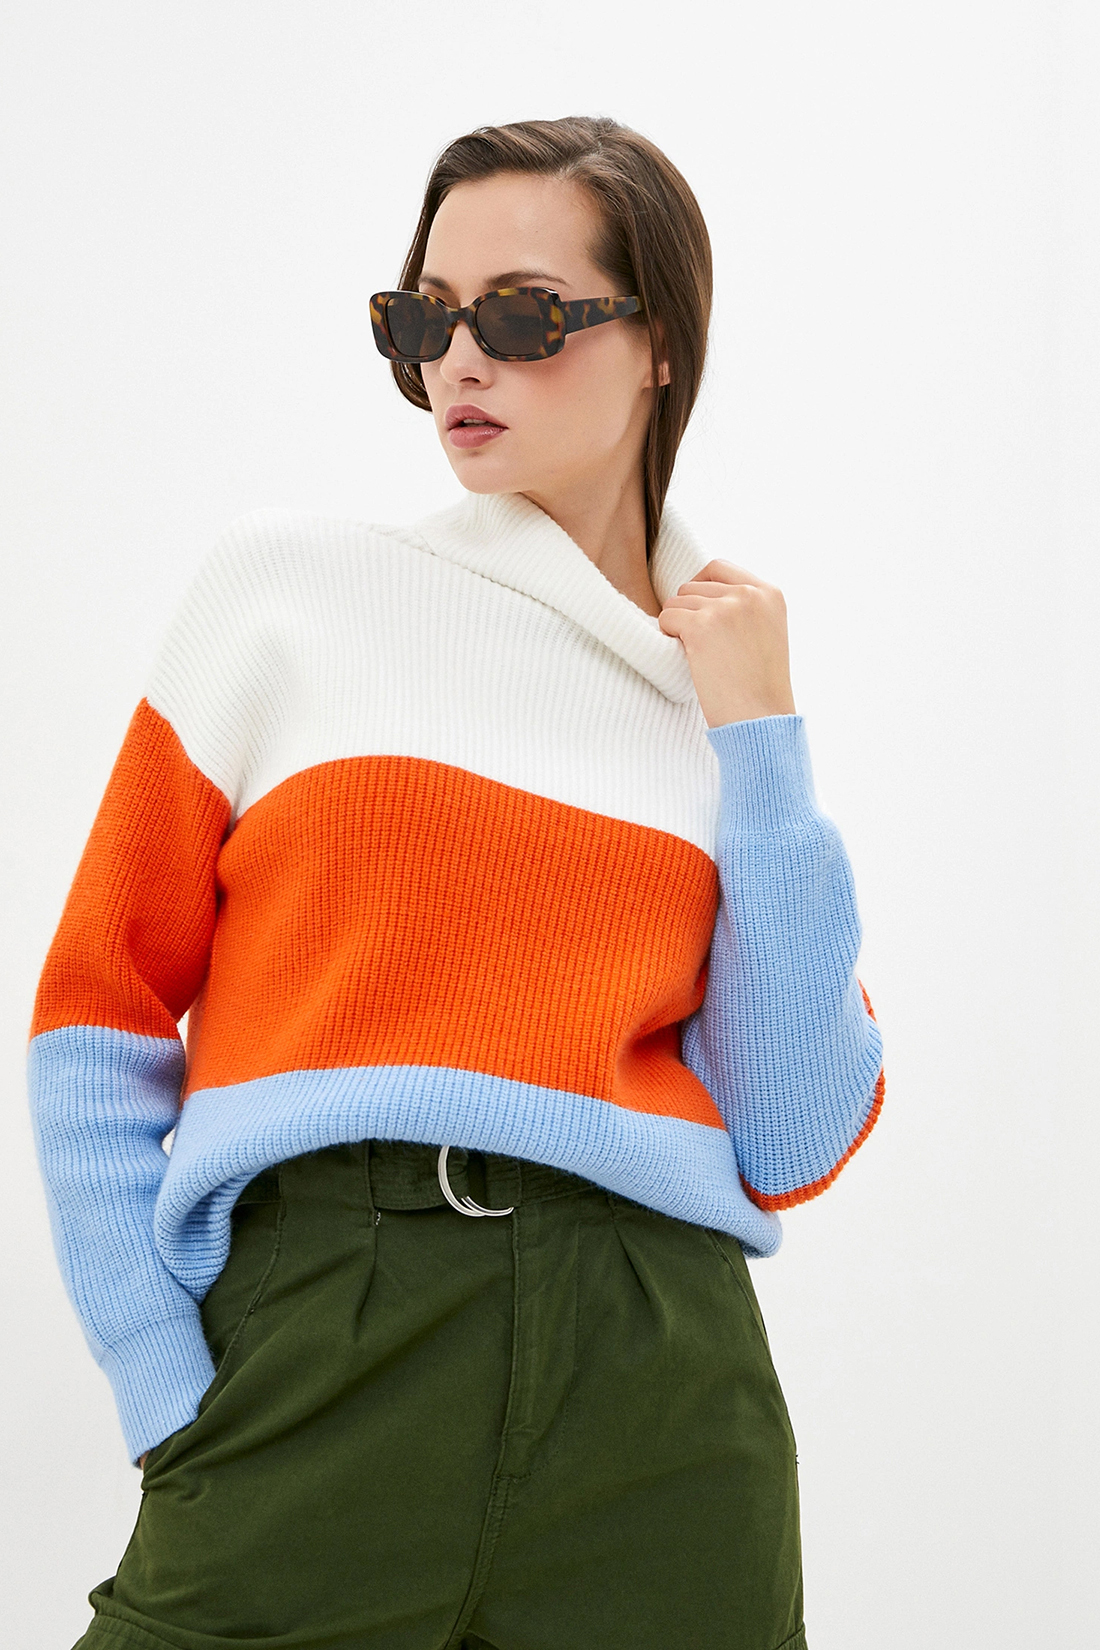 Трёхцветный свитер (арт. baon B229526), размер L Трёхцветный свитер (арт. baon B229526) - фото 1